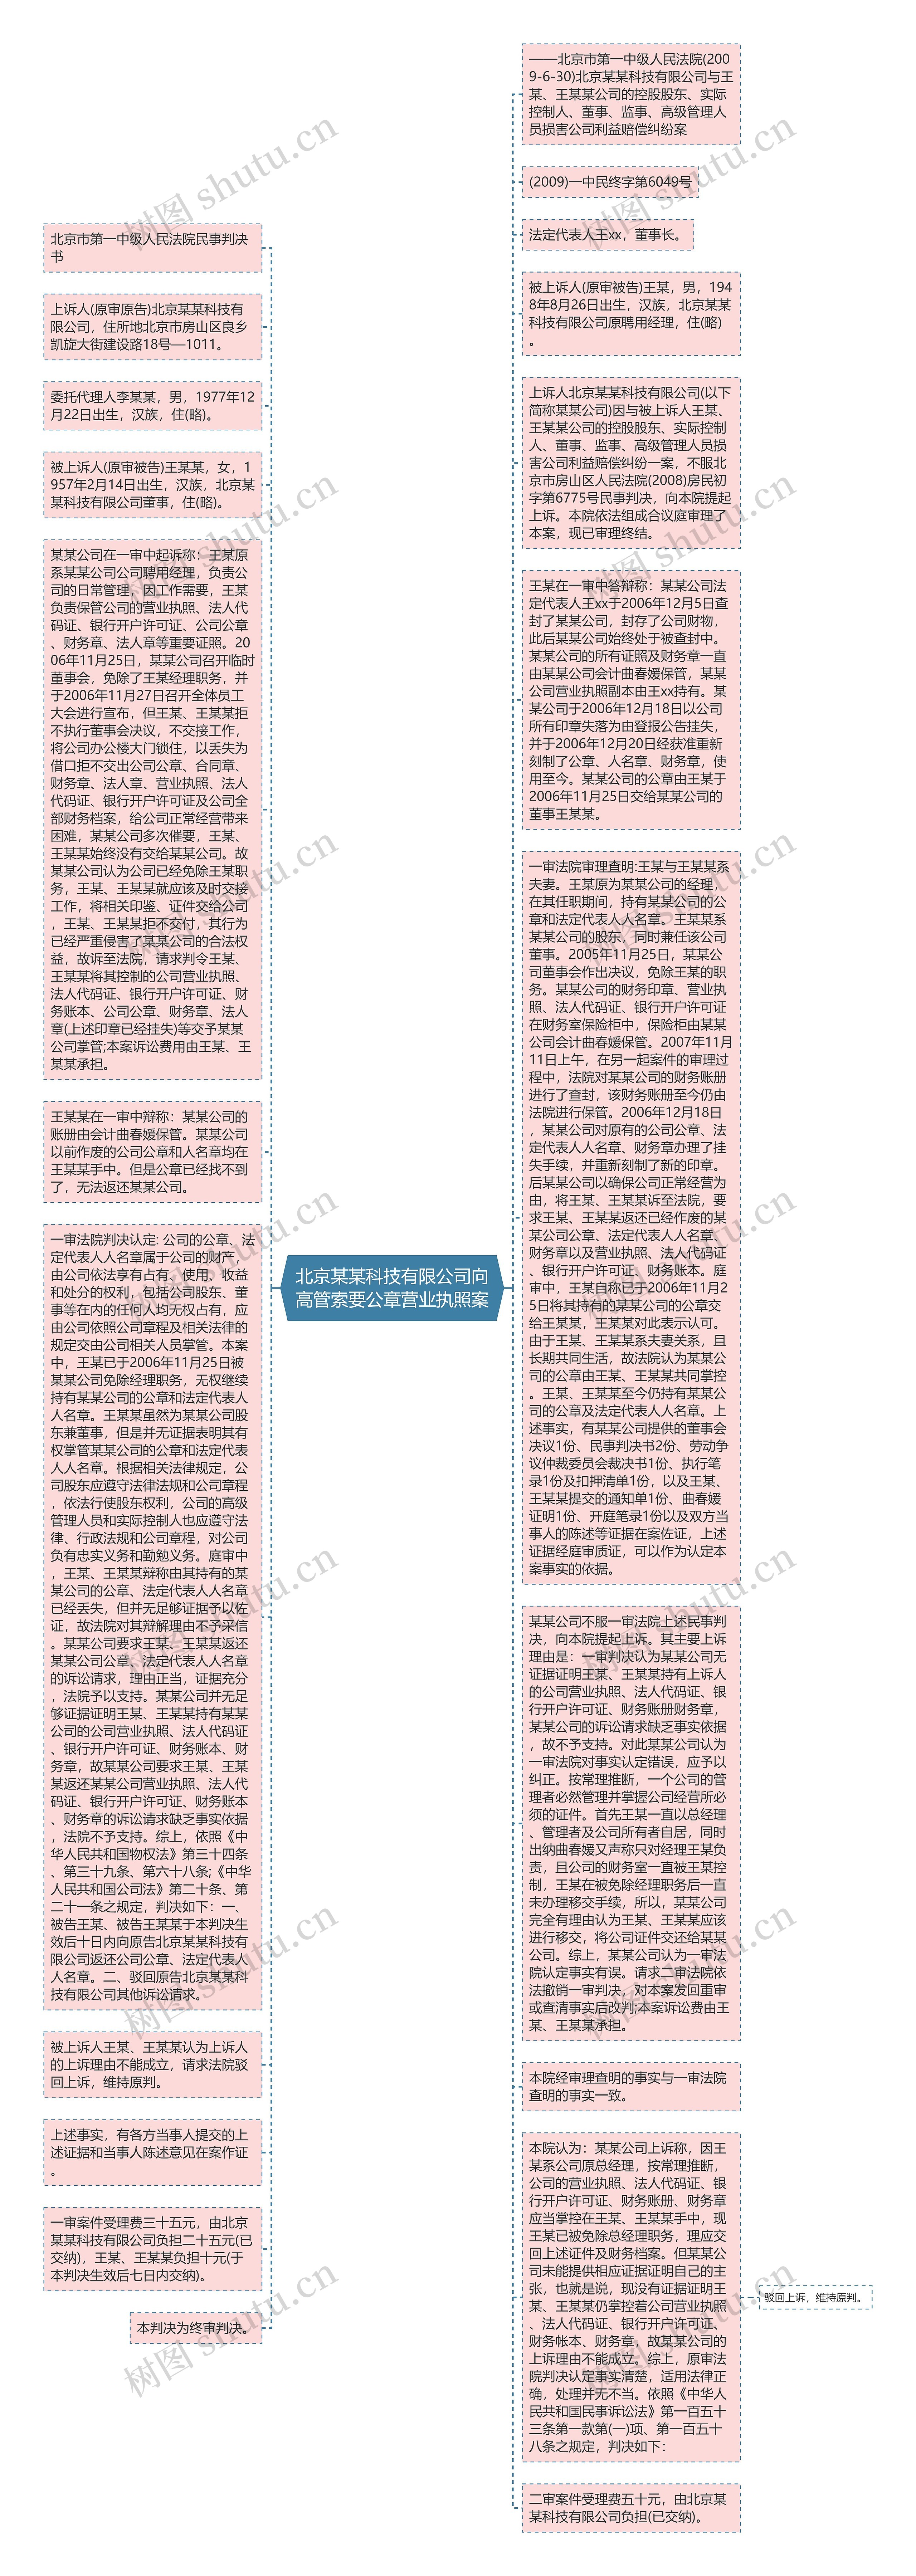 北京某某科技有限公司向高管索要公章营业执照案思维导图